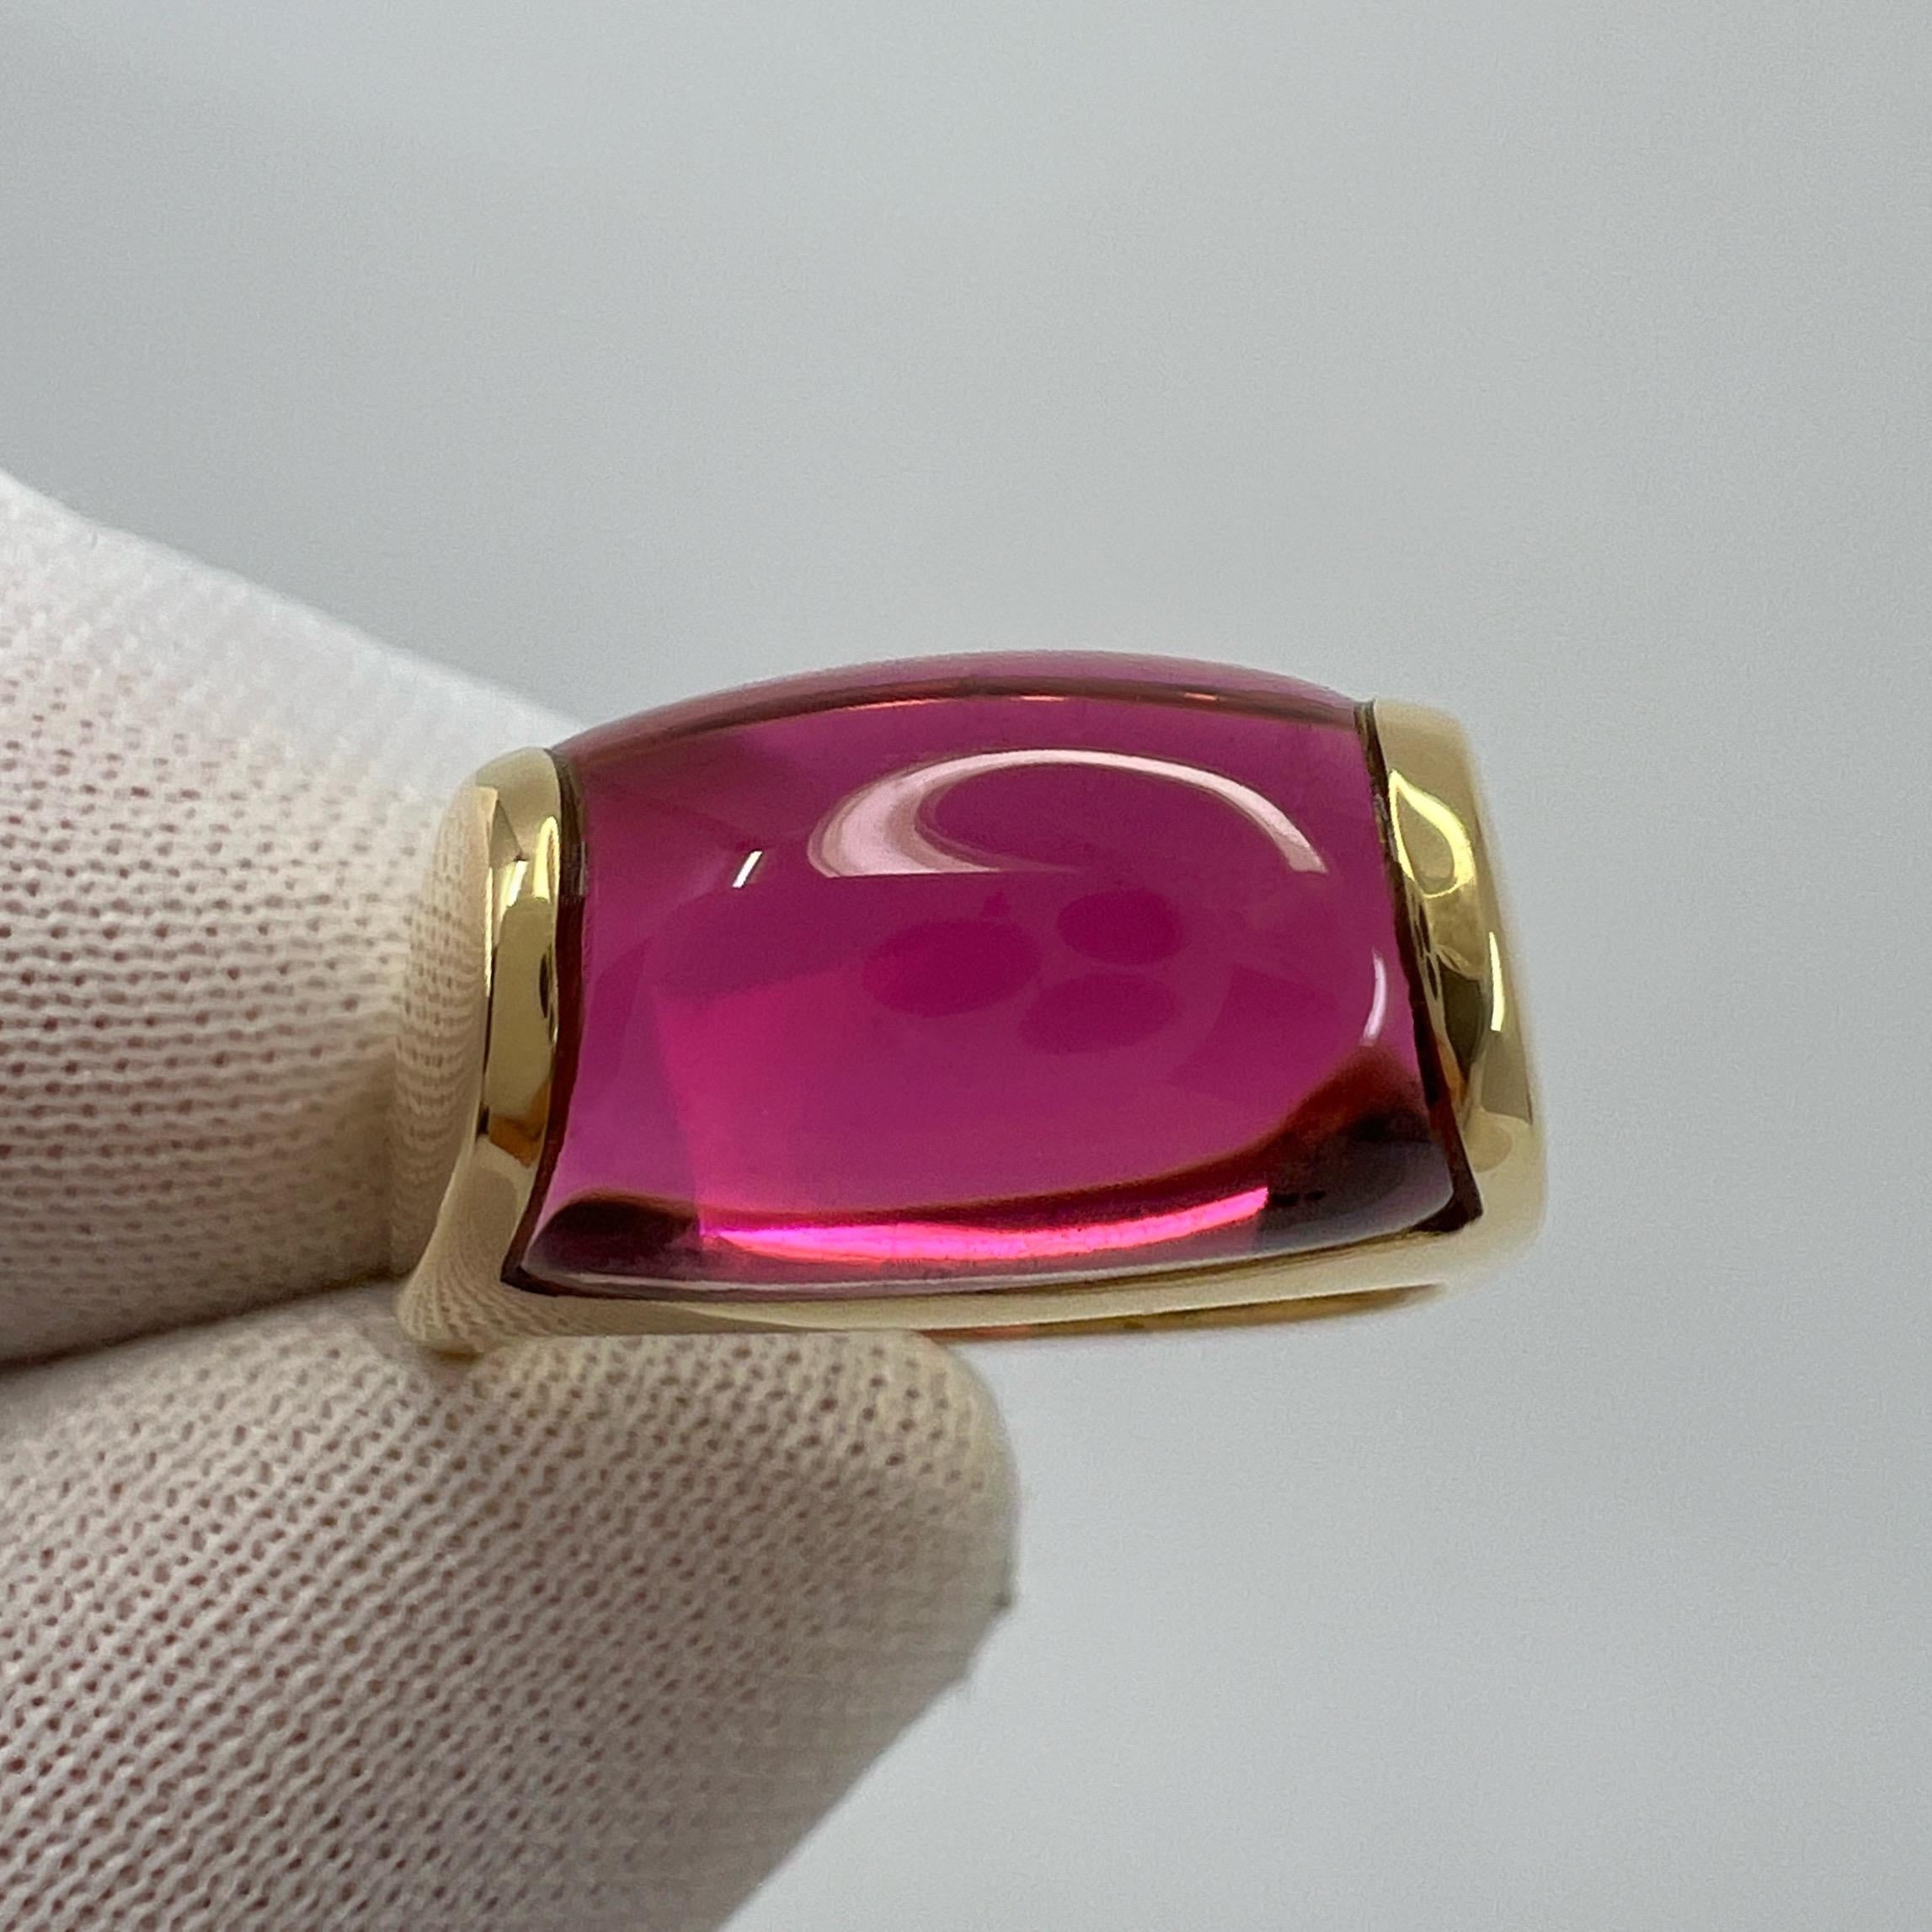 Rare Bvlgari  Tronchetto 18k Yellow Gold Rubellite Pink Tourmaline Ring with Box 7